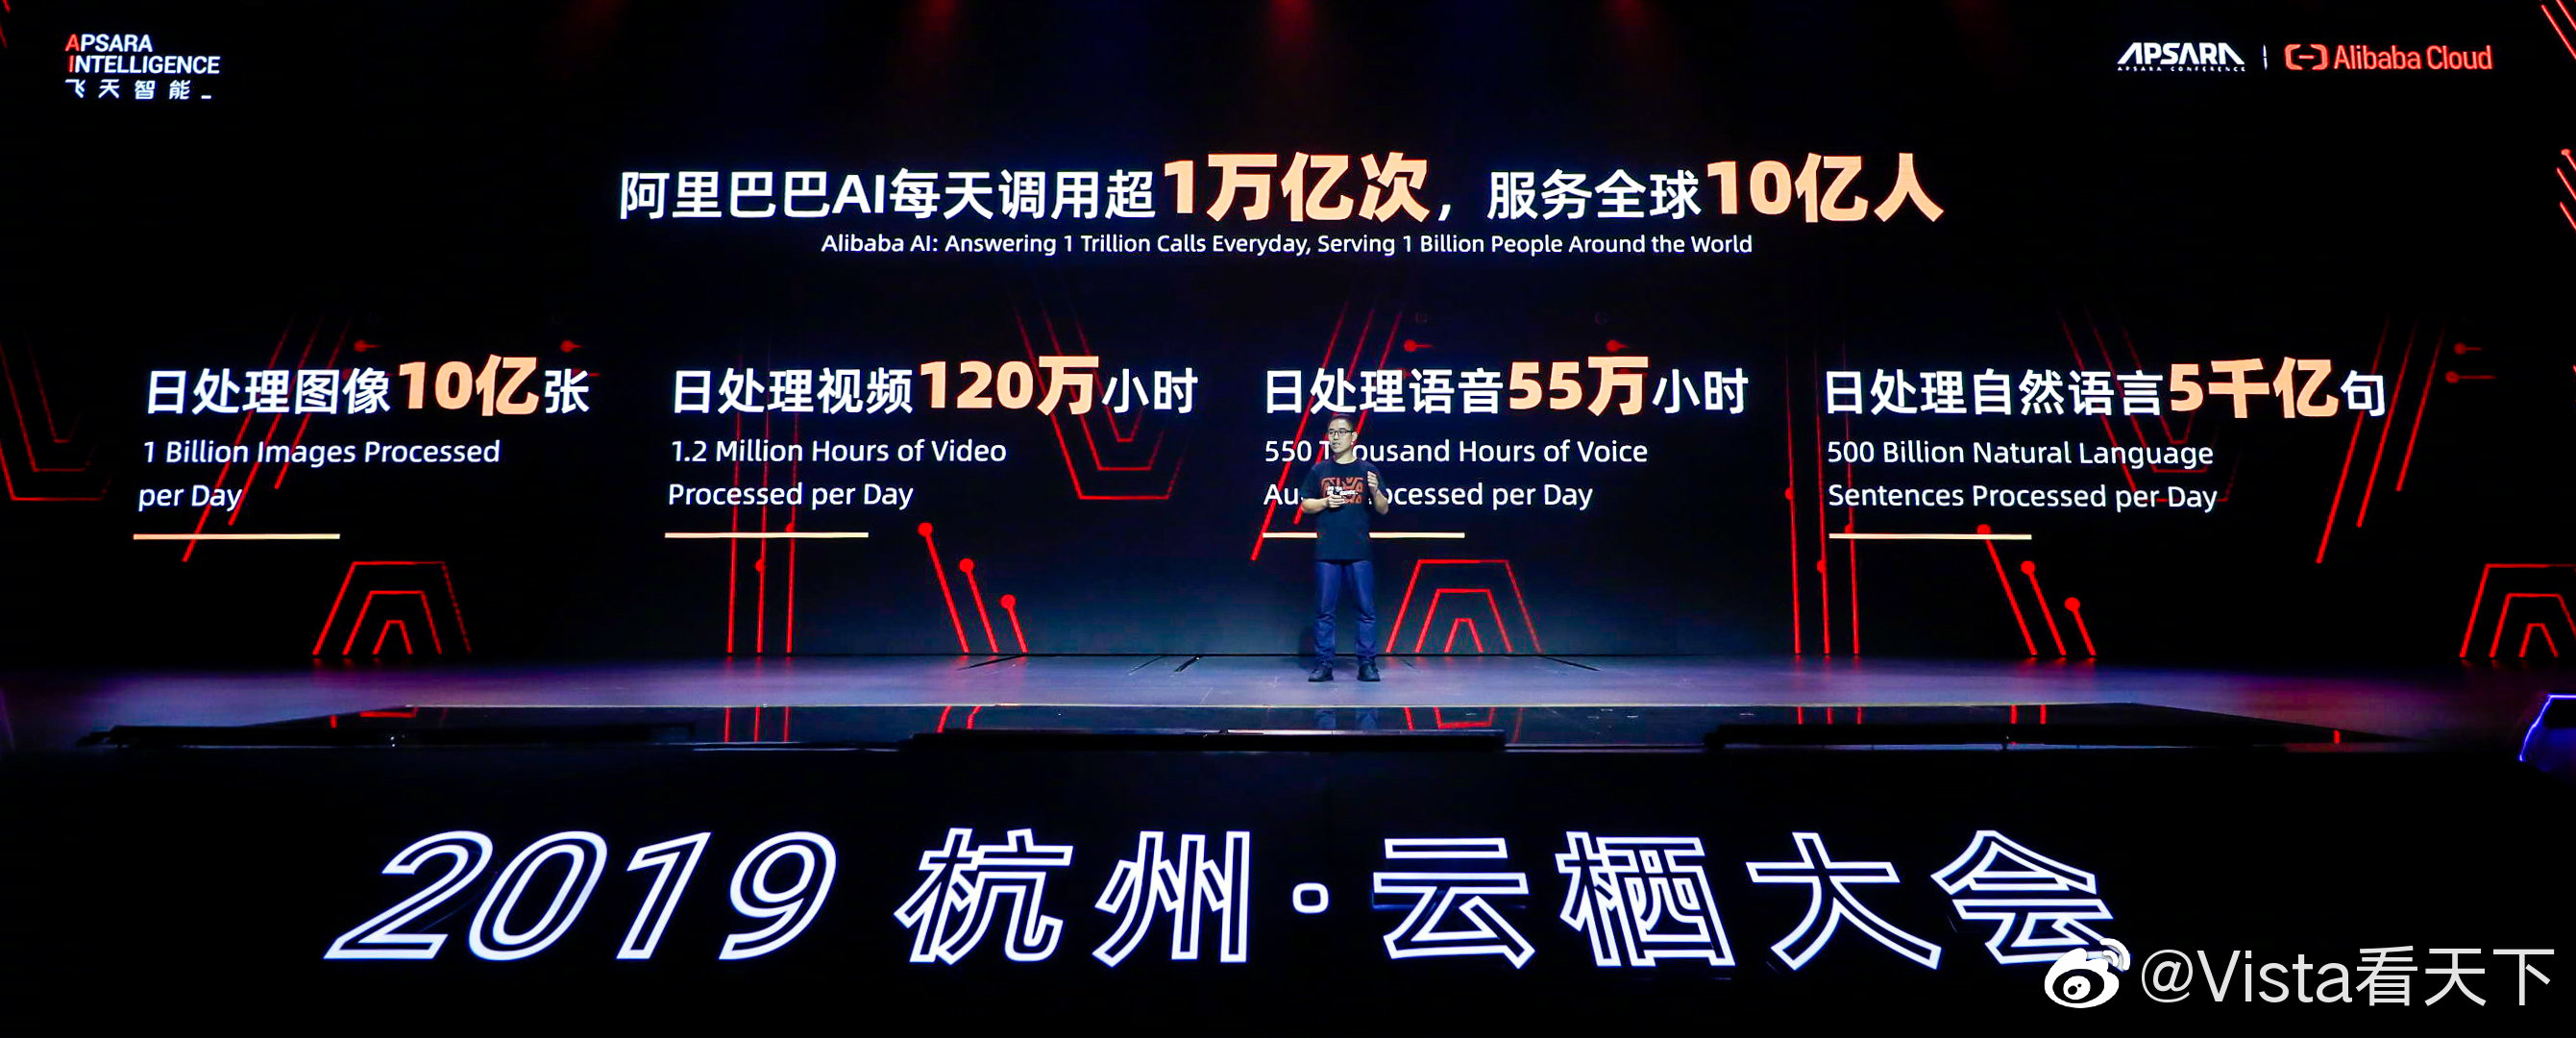 AI日调用次数超万亿，阿里称已成中国最大人工智能公司